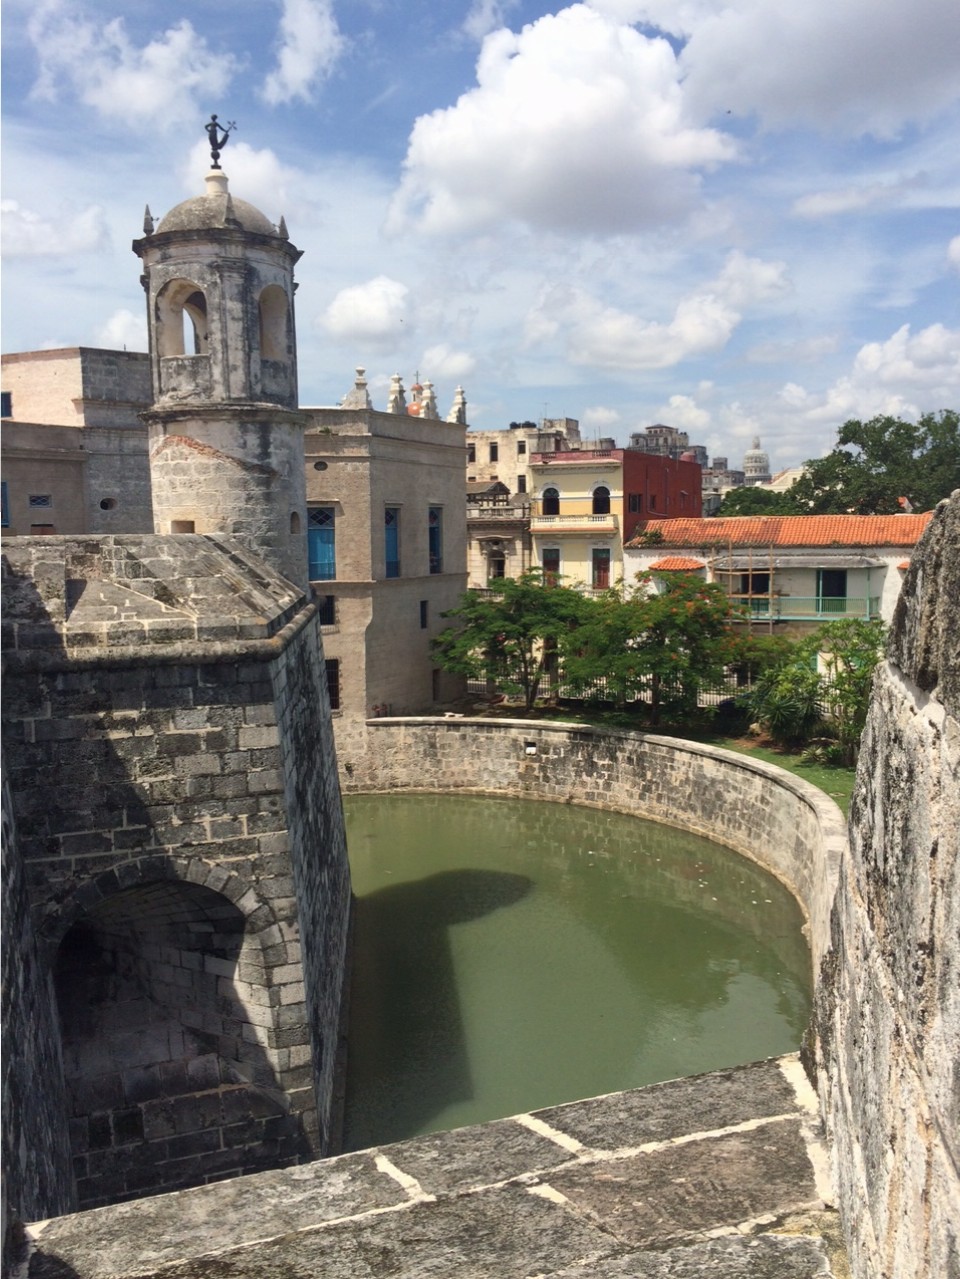 View of Havana from atop the Castillo de la Real Fuerza